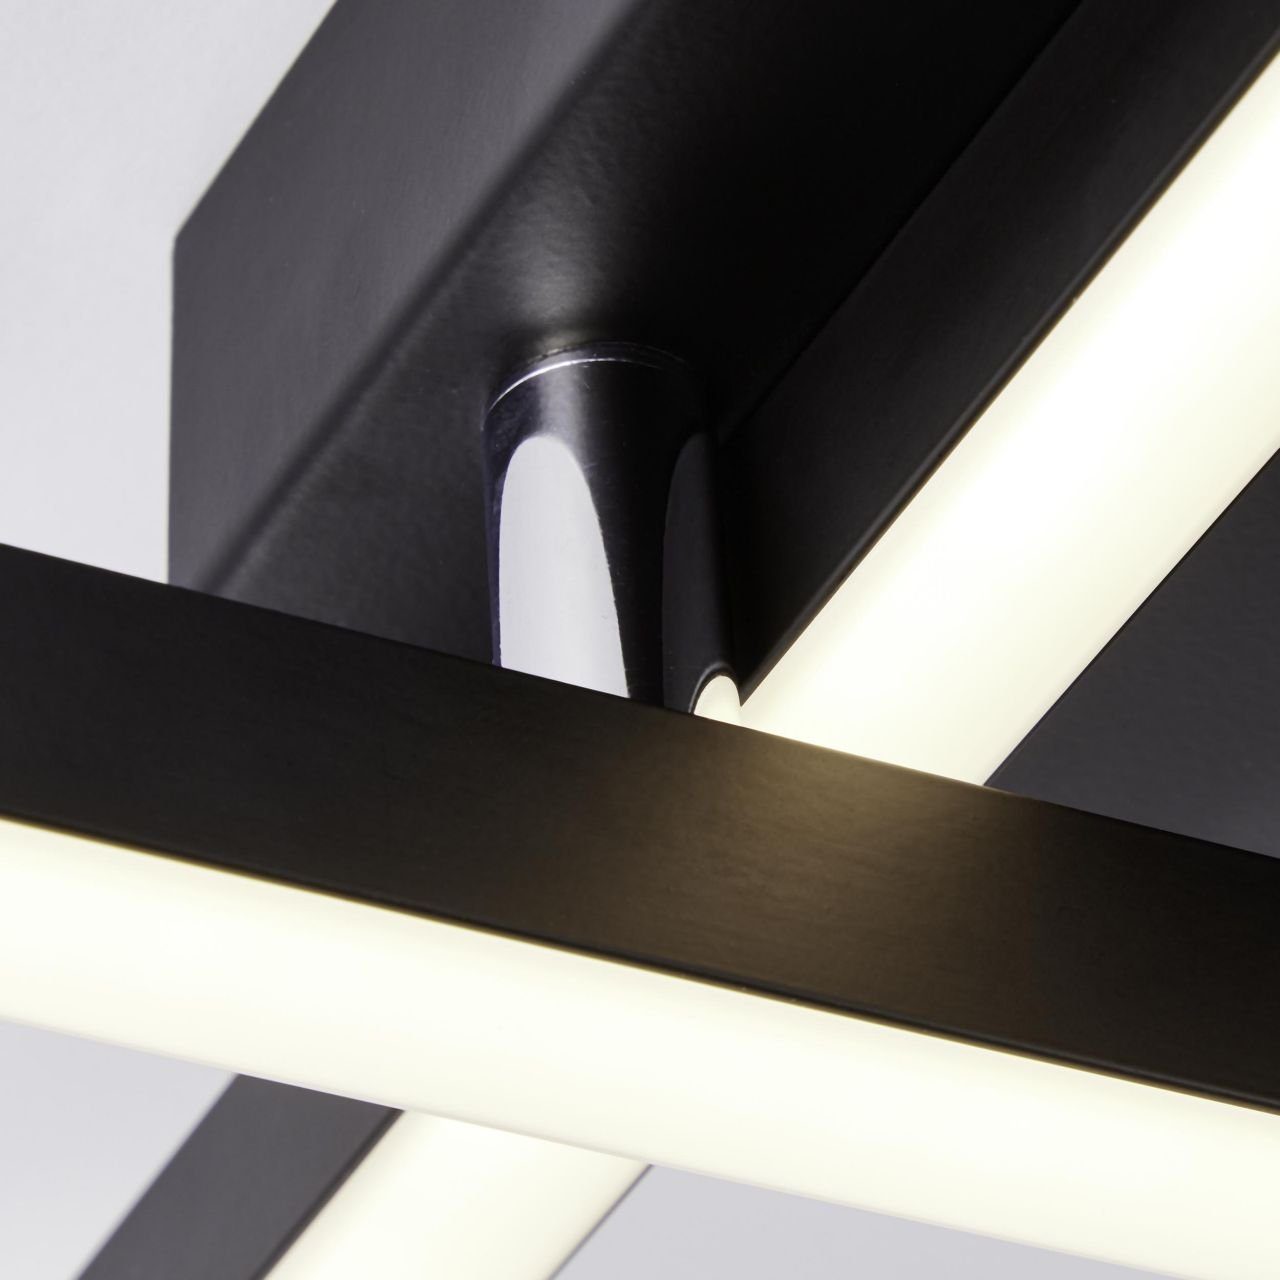 Lampe, schwarz, Kjorn Deckenleuchte Metall/Kunststoff, LED Brilliant 2flg Kjorn, 3000K, 1x 33W Deckenleuchte